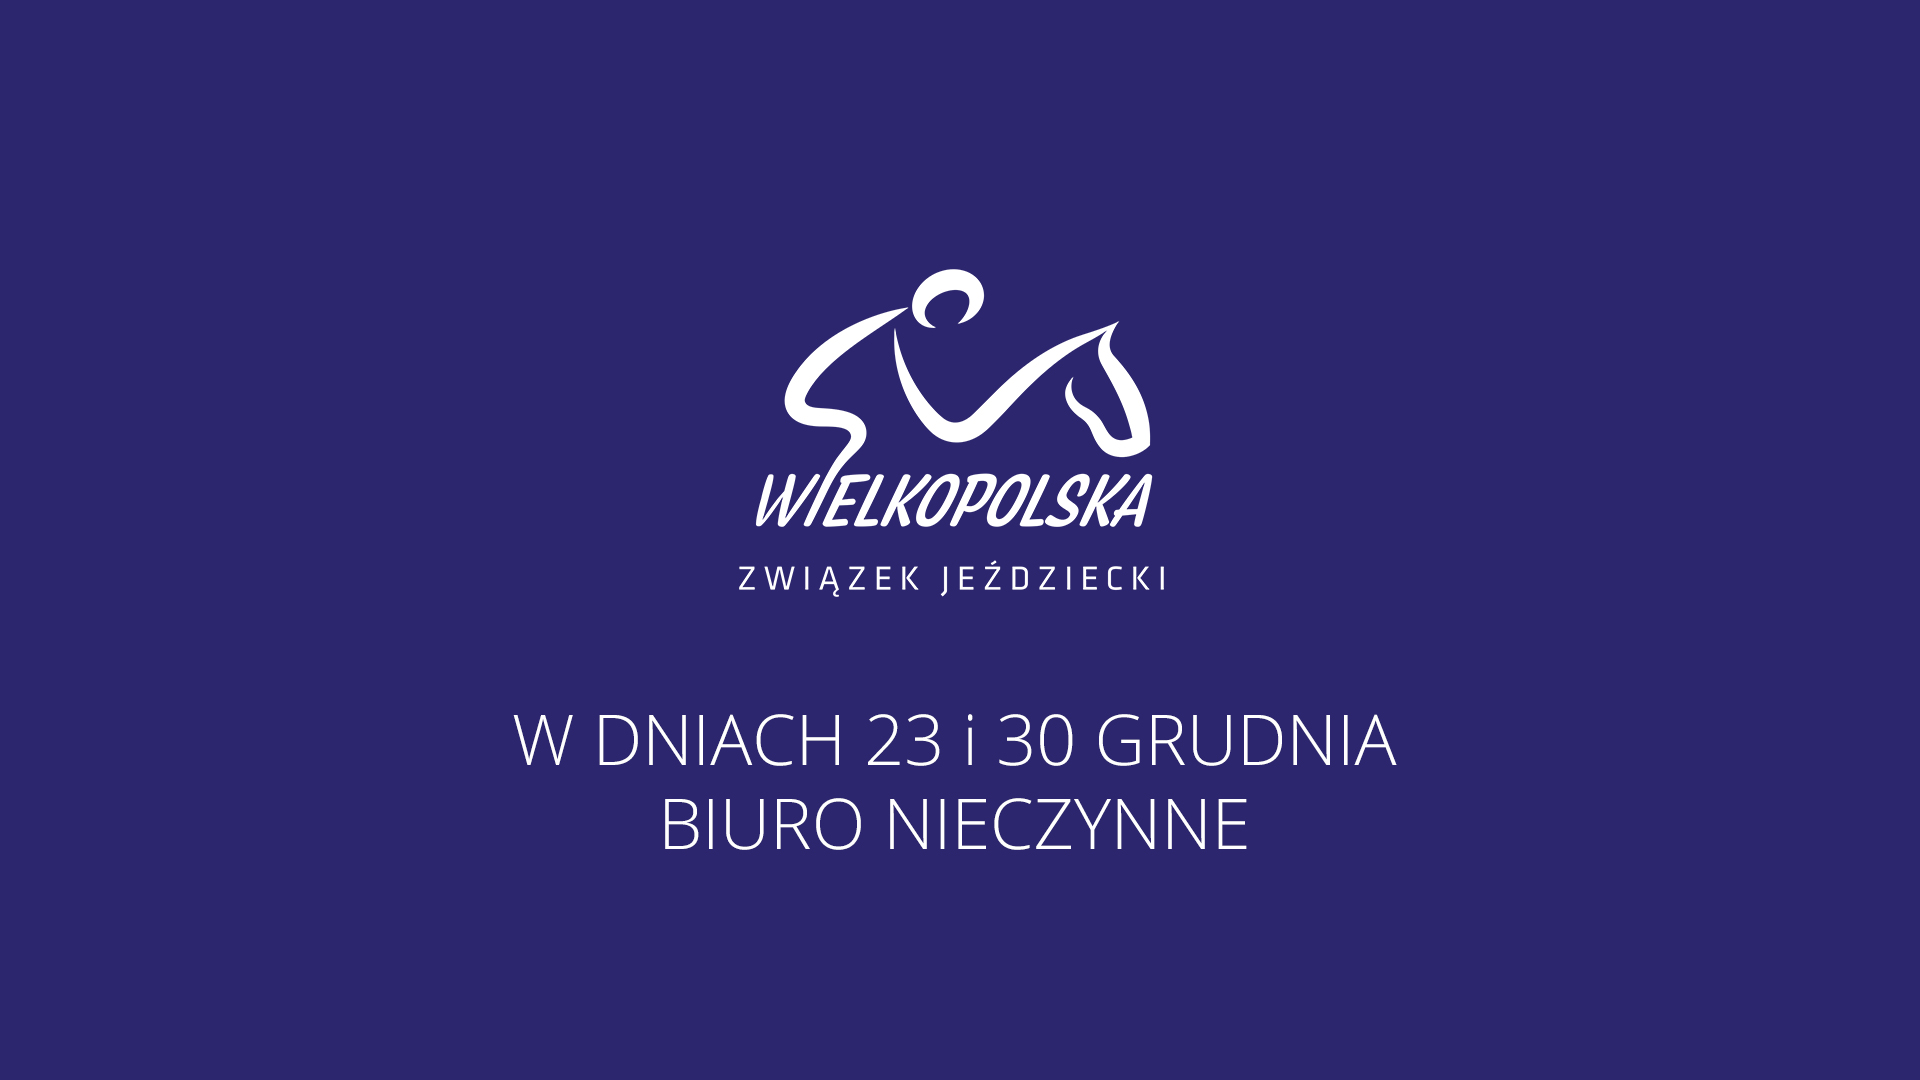 Wielkopolski Związek Jeździecki